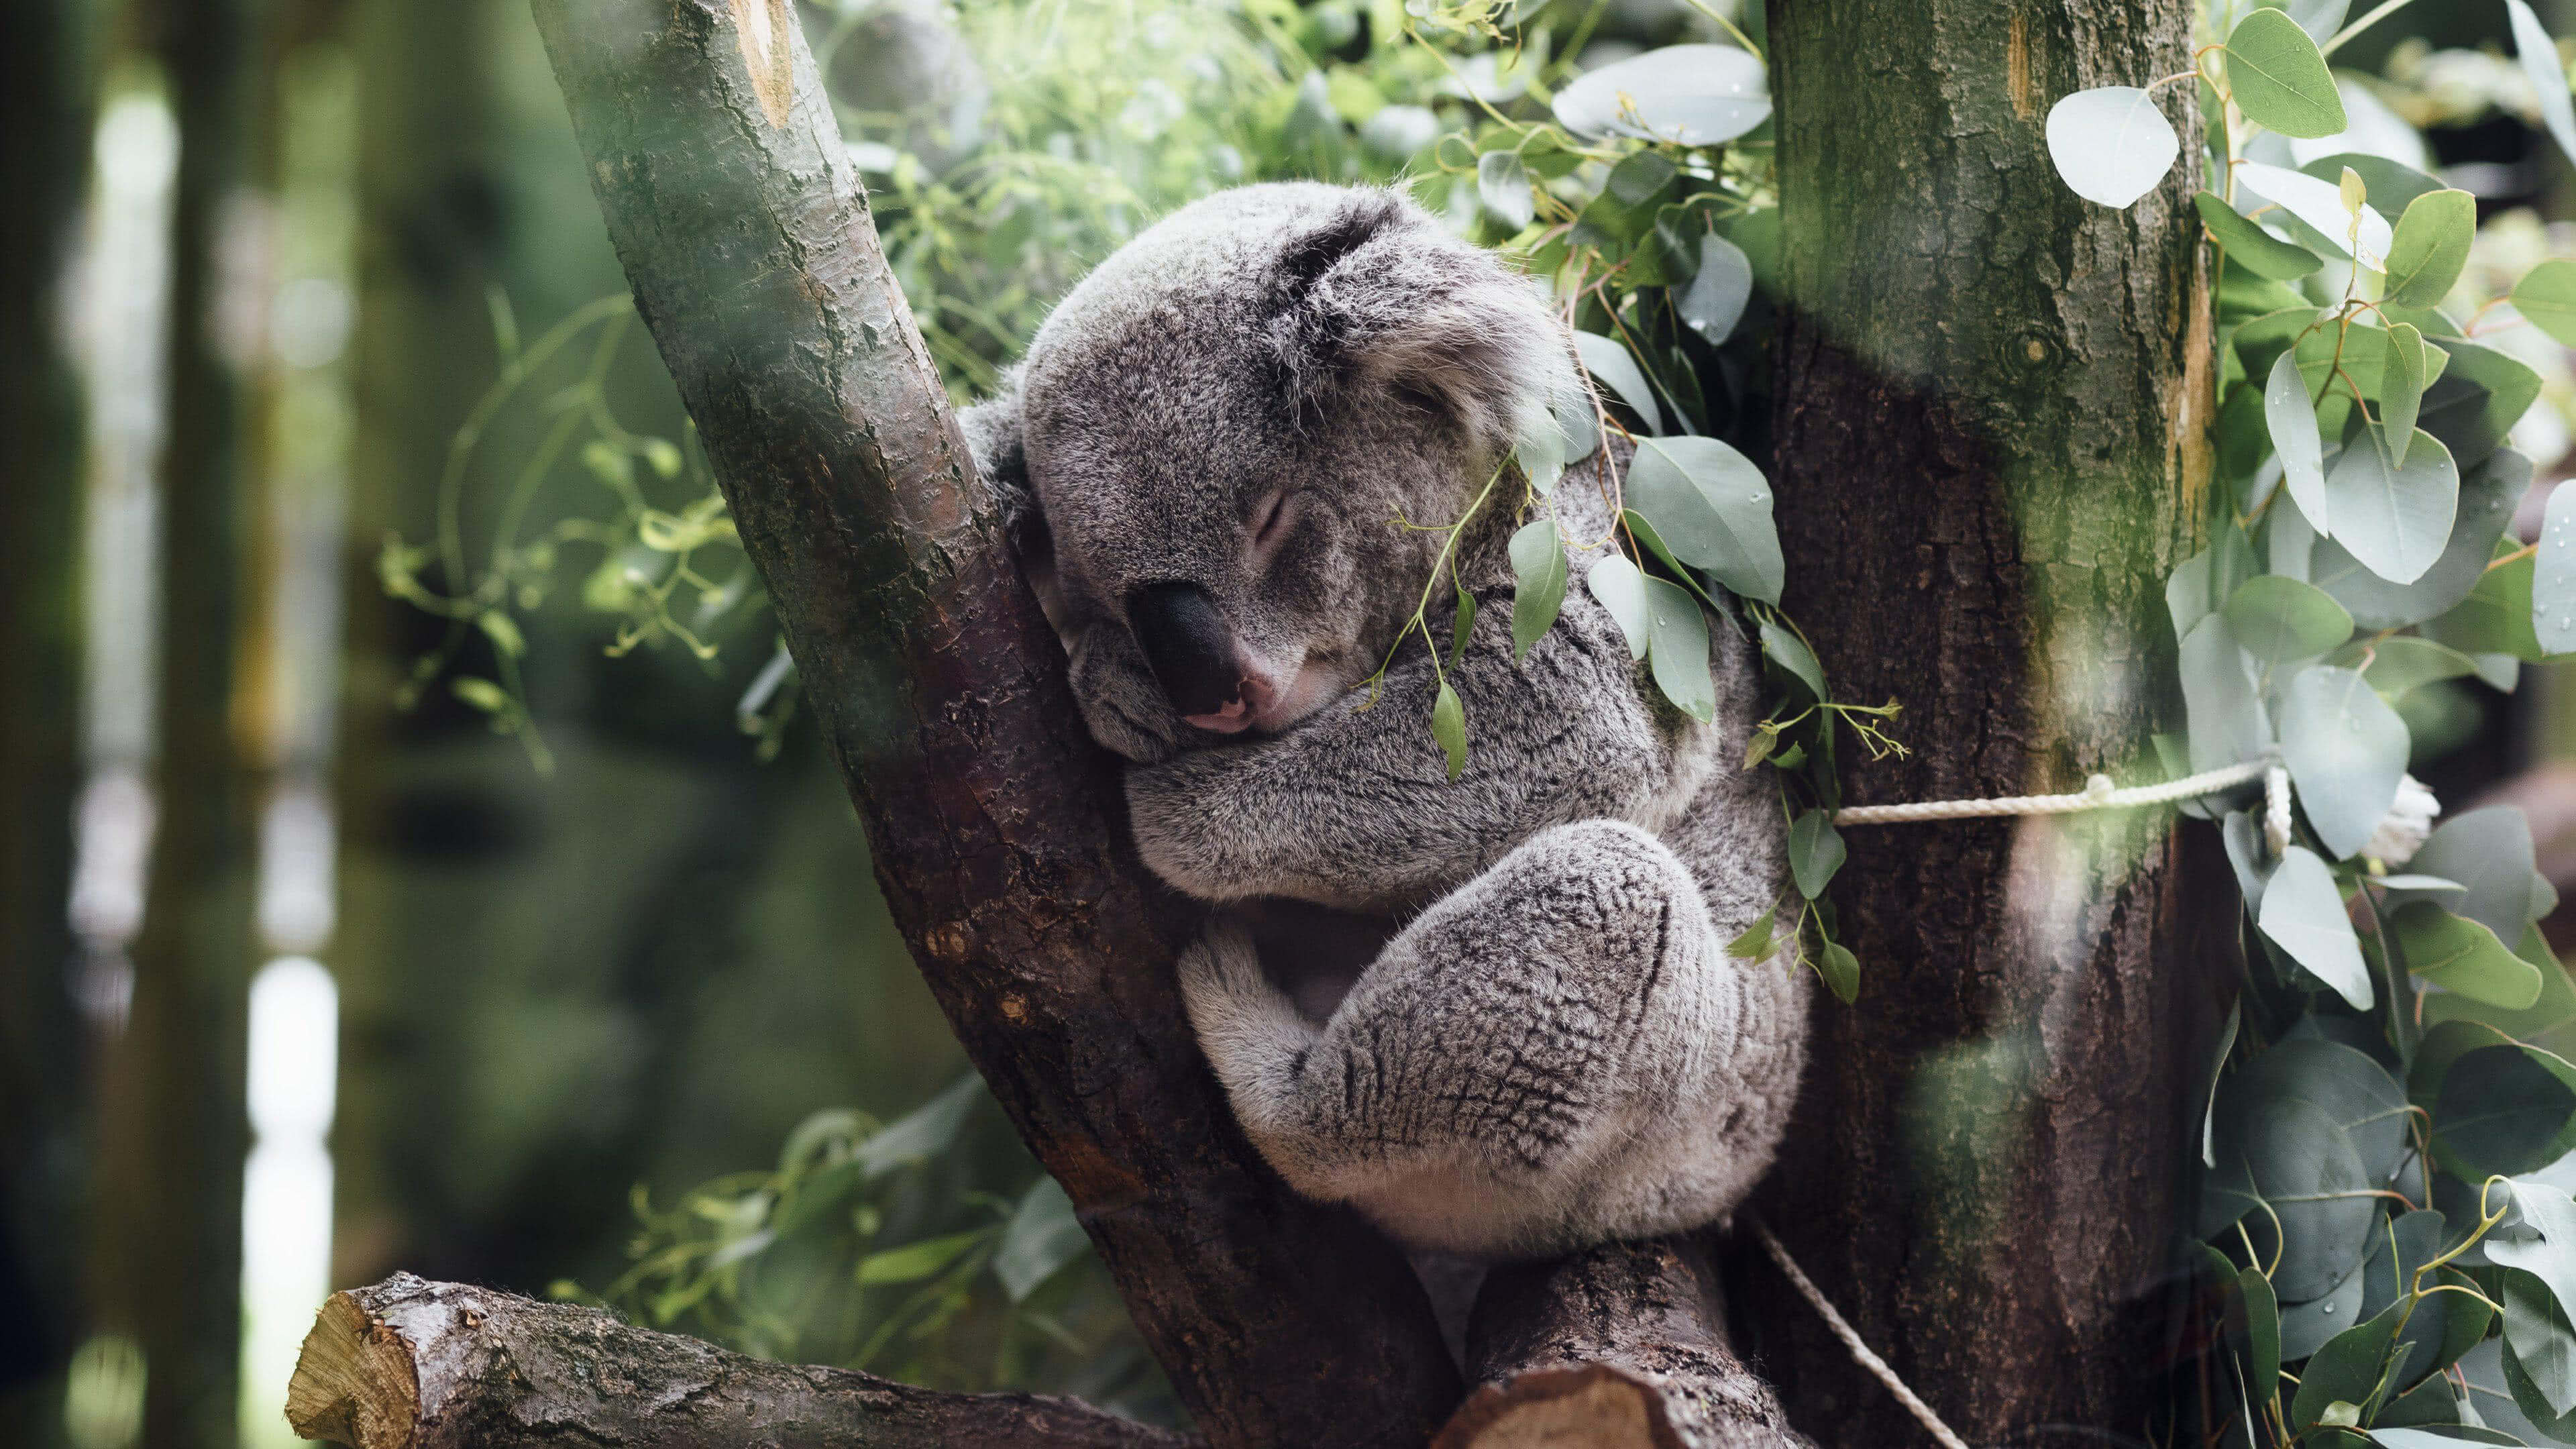 Koala Sleeping In A Tree UHD 4K Wallpaper | Pixelz